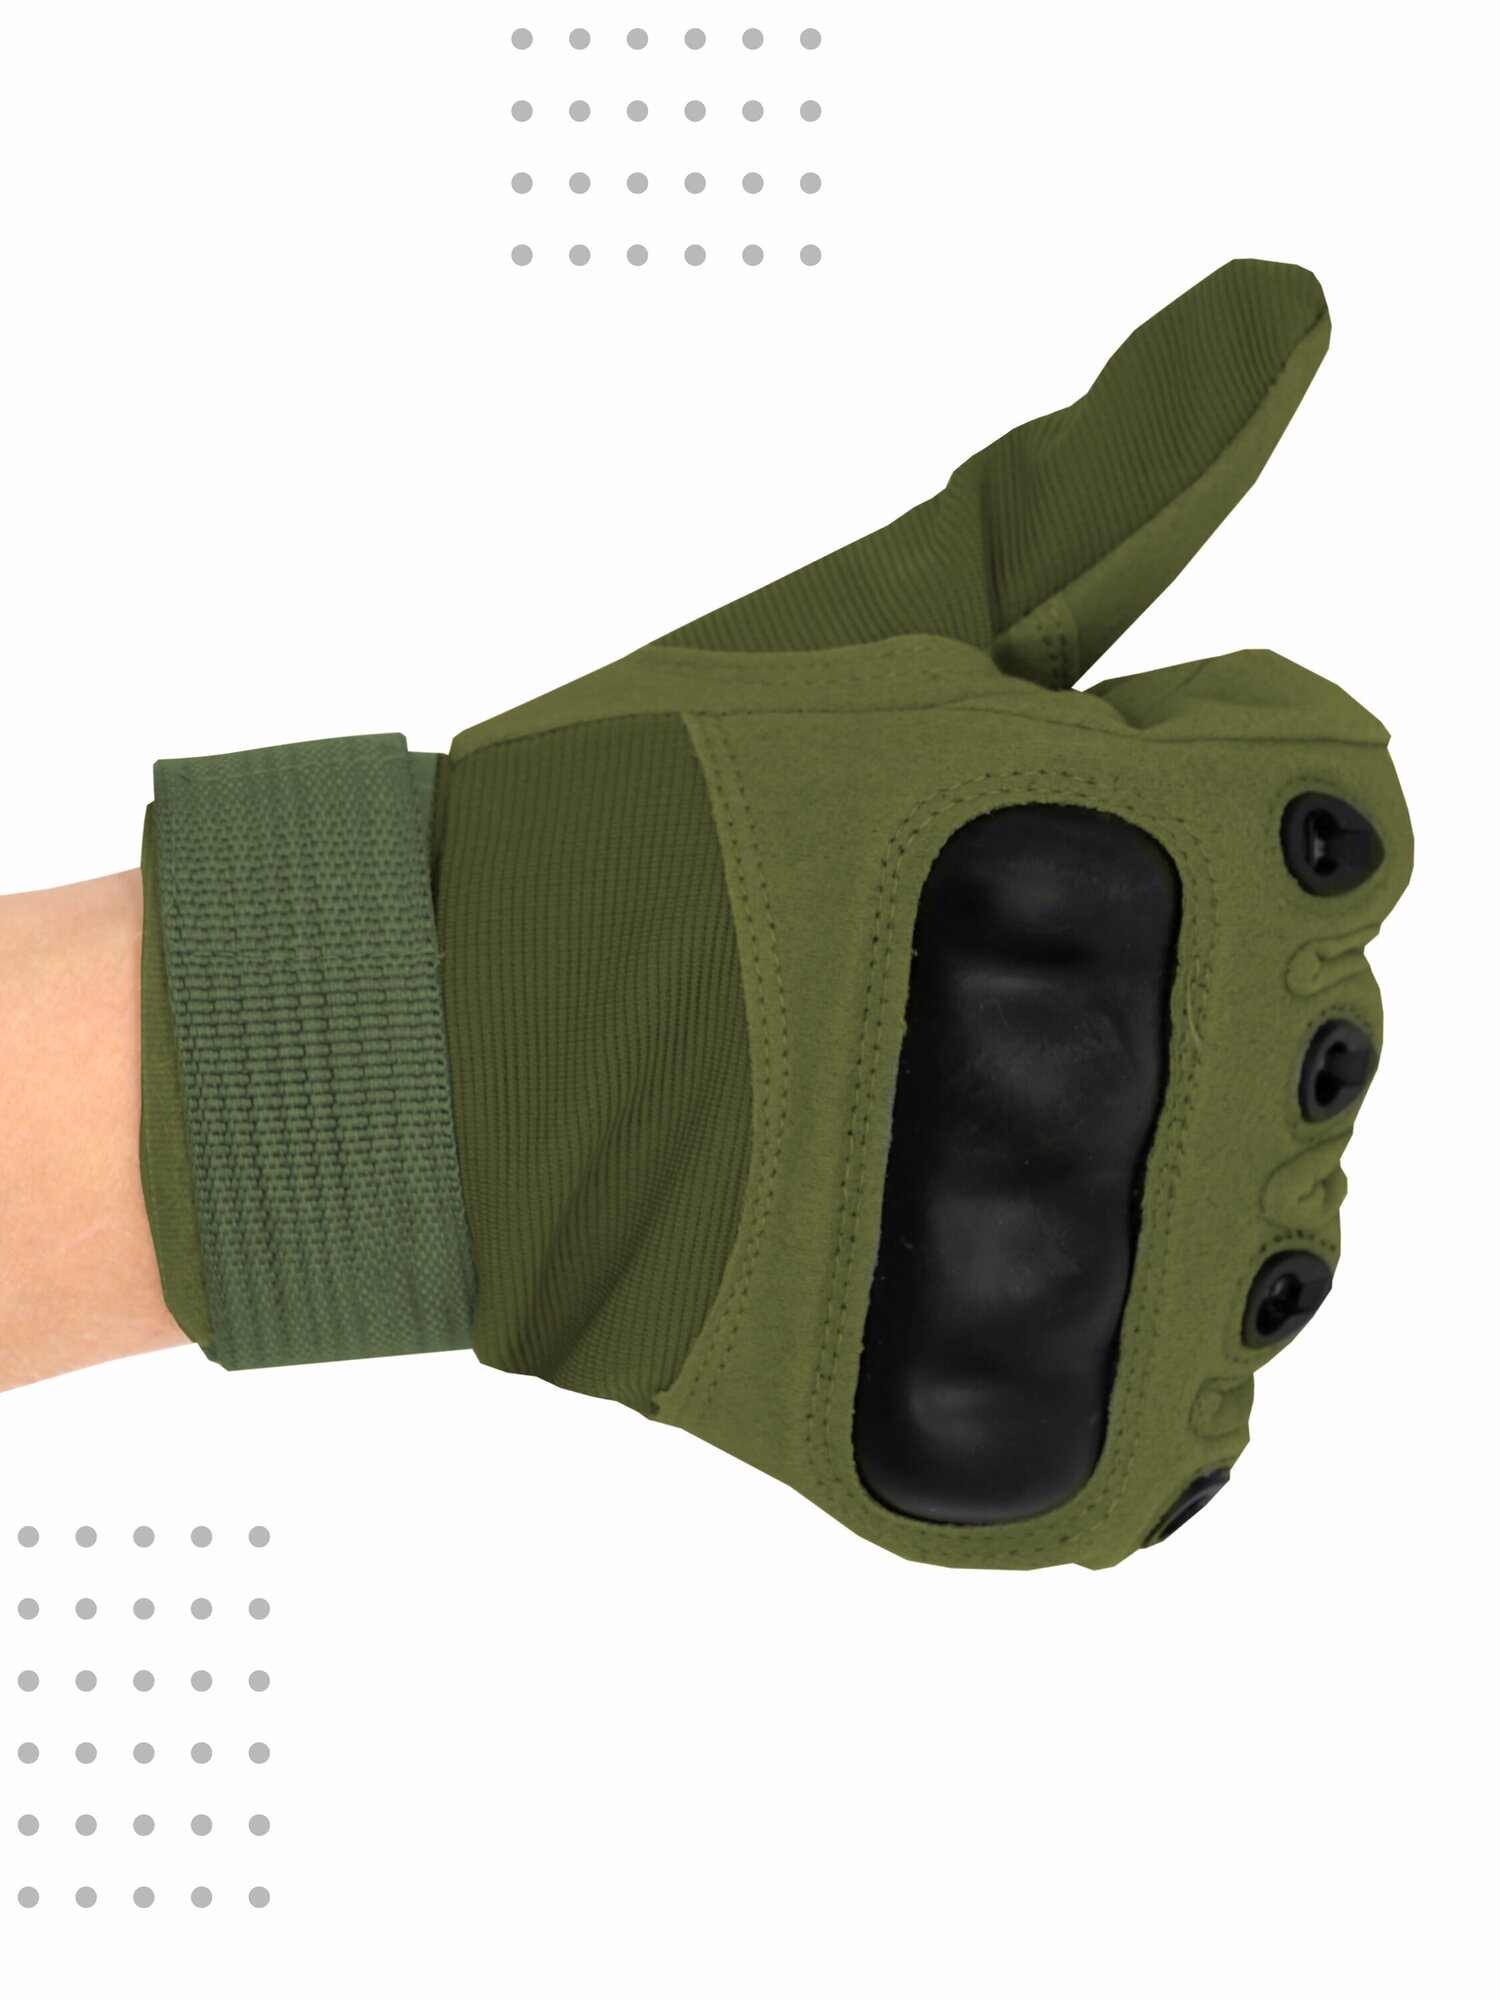 Защитные тактические перчатки Boomshakalaka, цвет зеленый, размер L, обхват ладони 210-230 мм